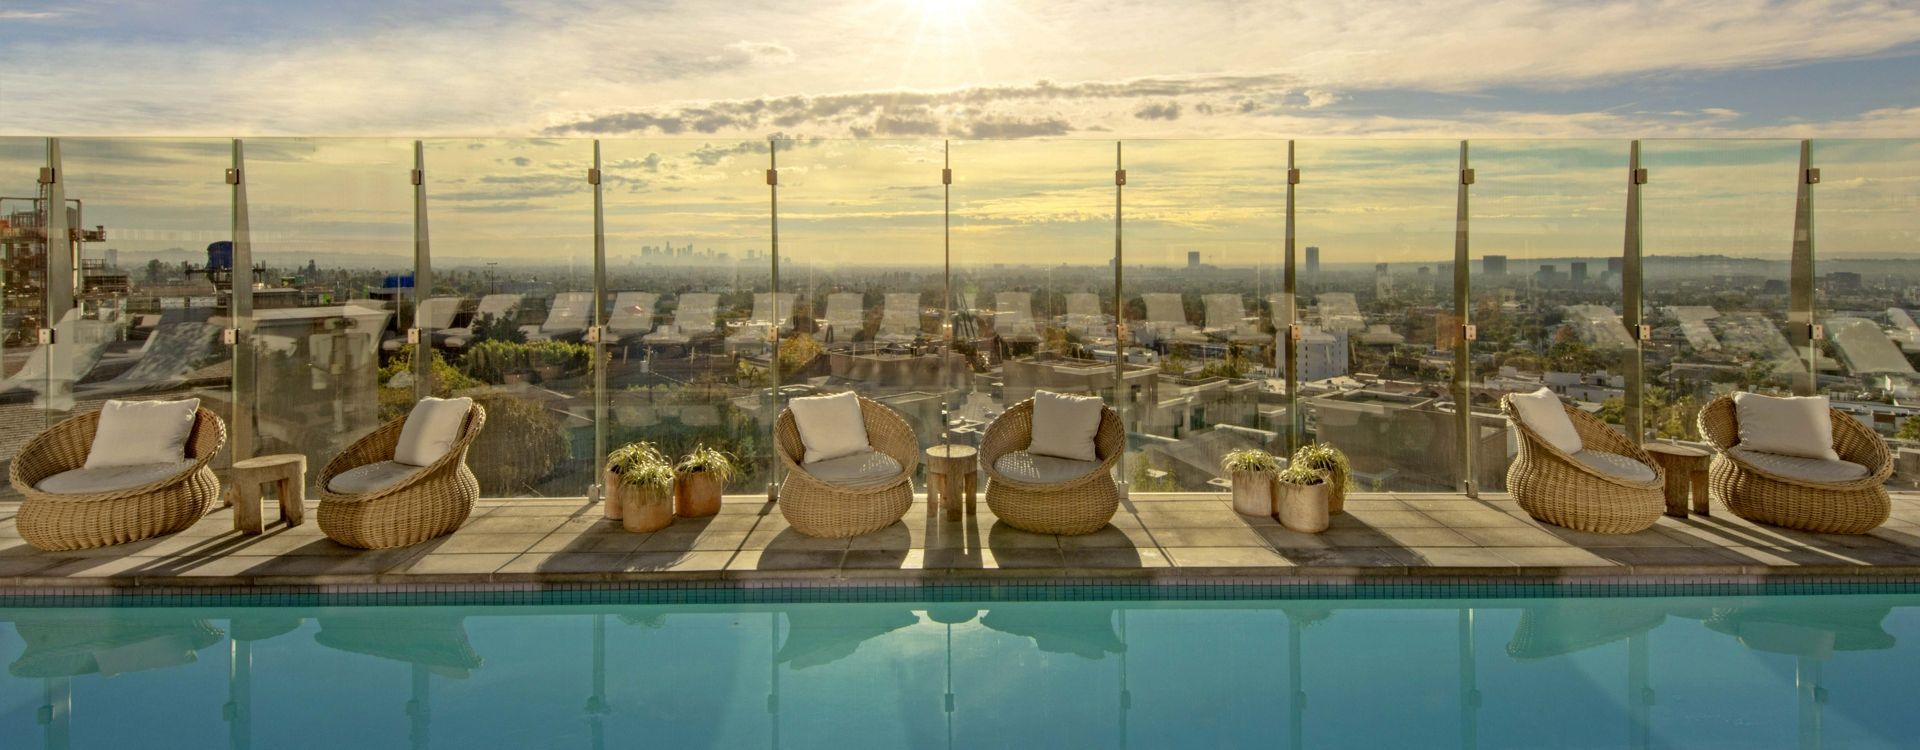 1 Hotel West Hollywood Pool Deck.jpg